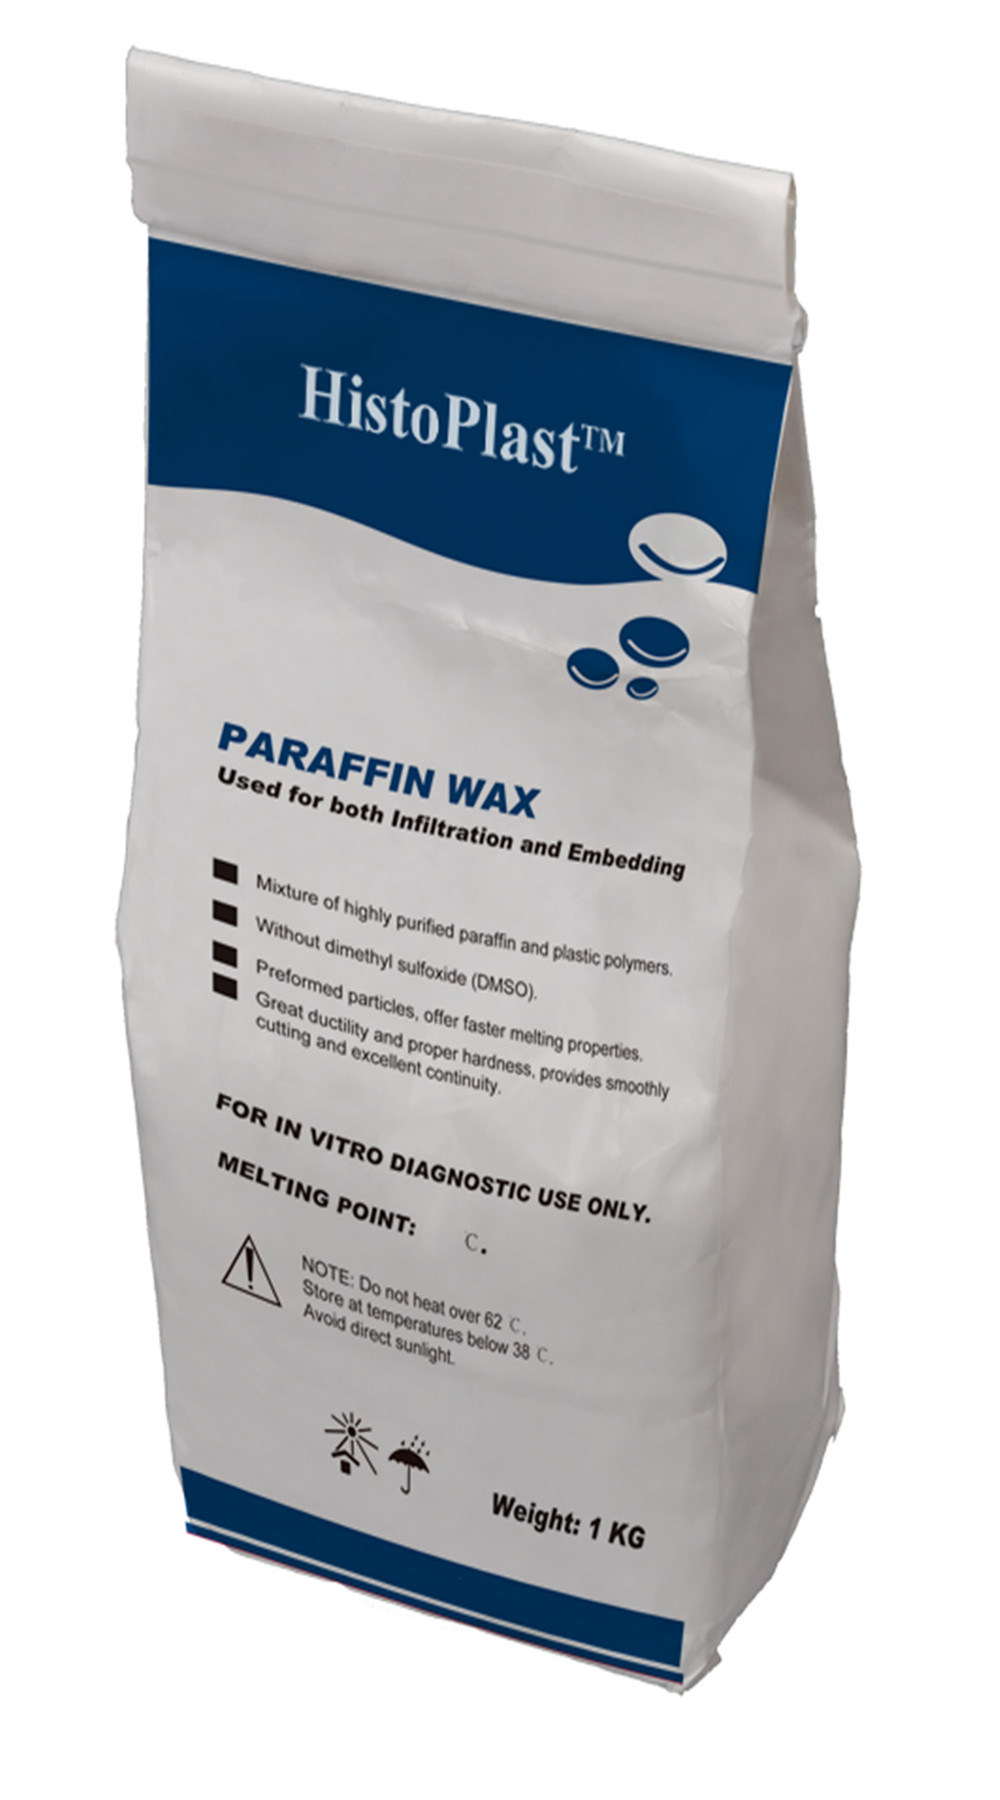 Histoplasttm Paraffin Wax